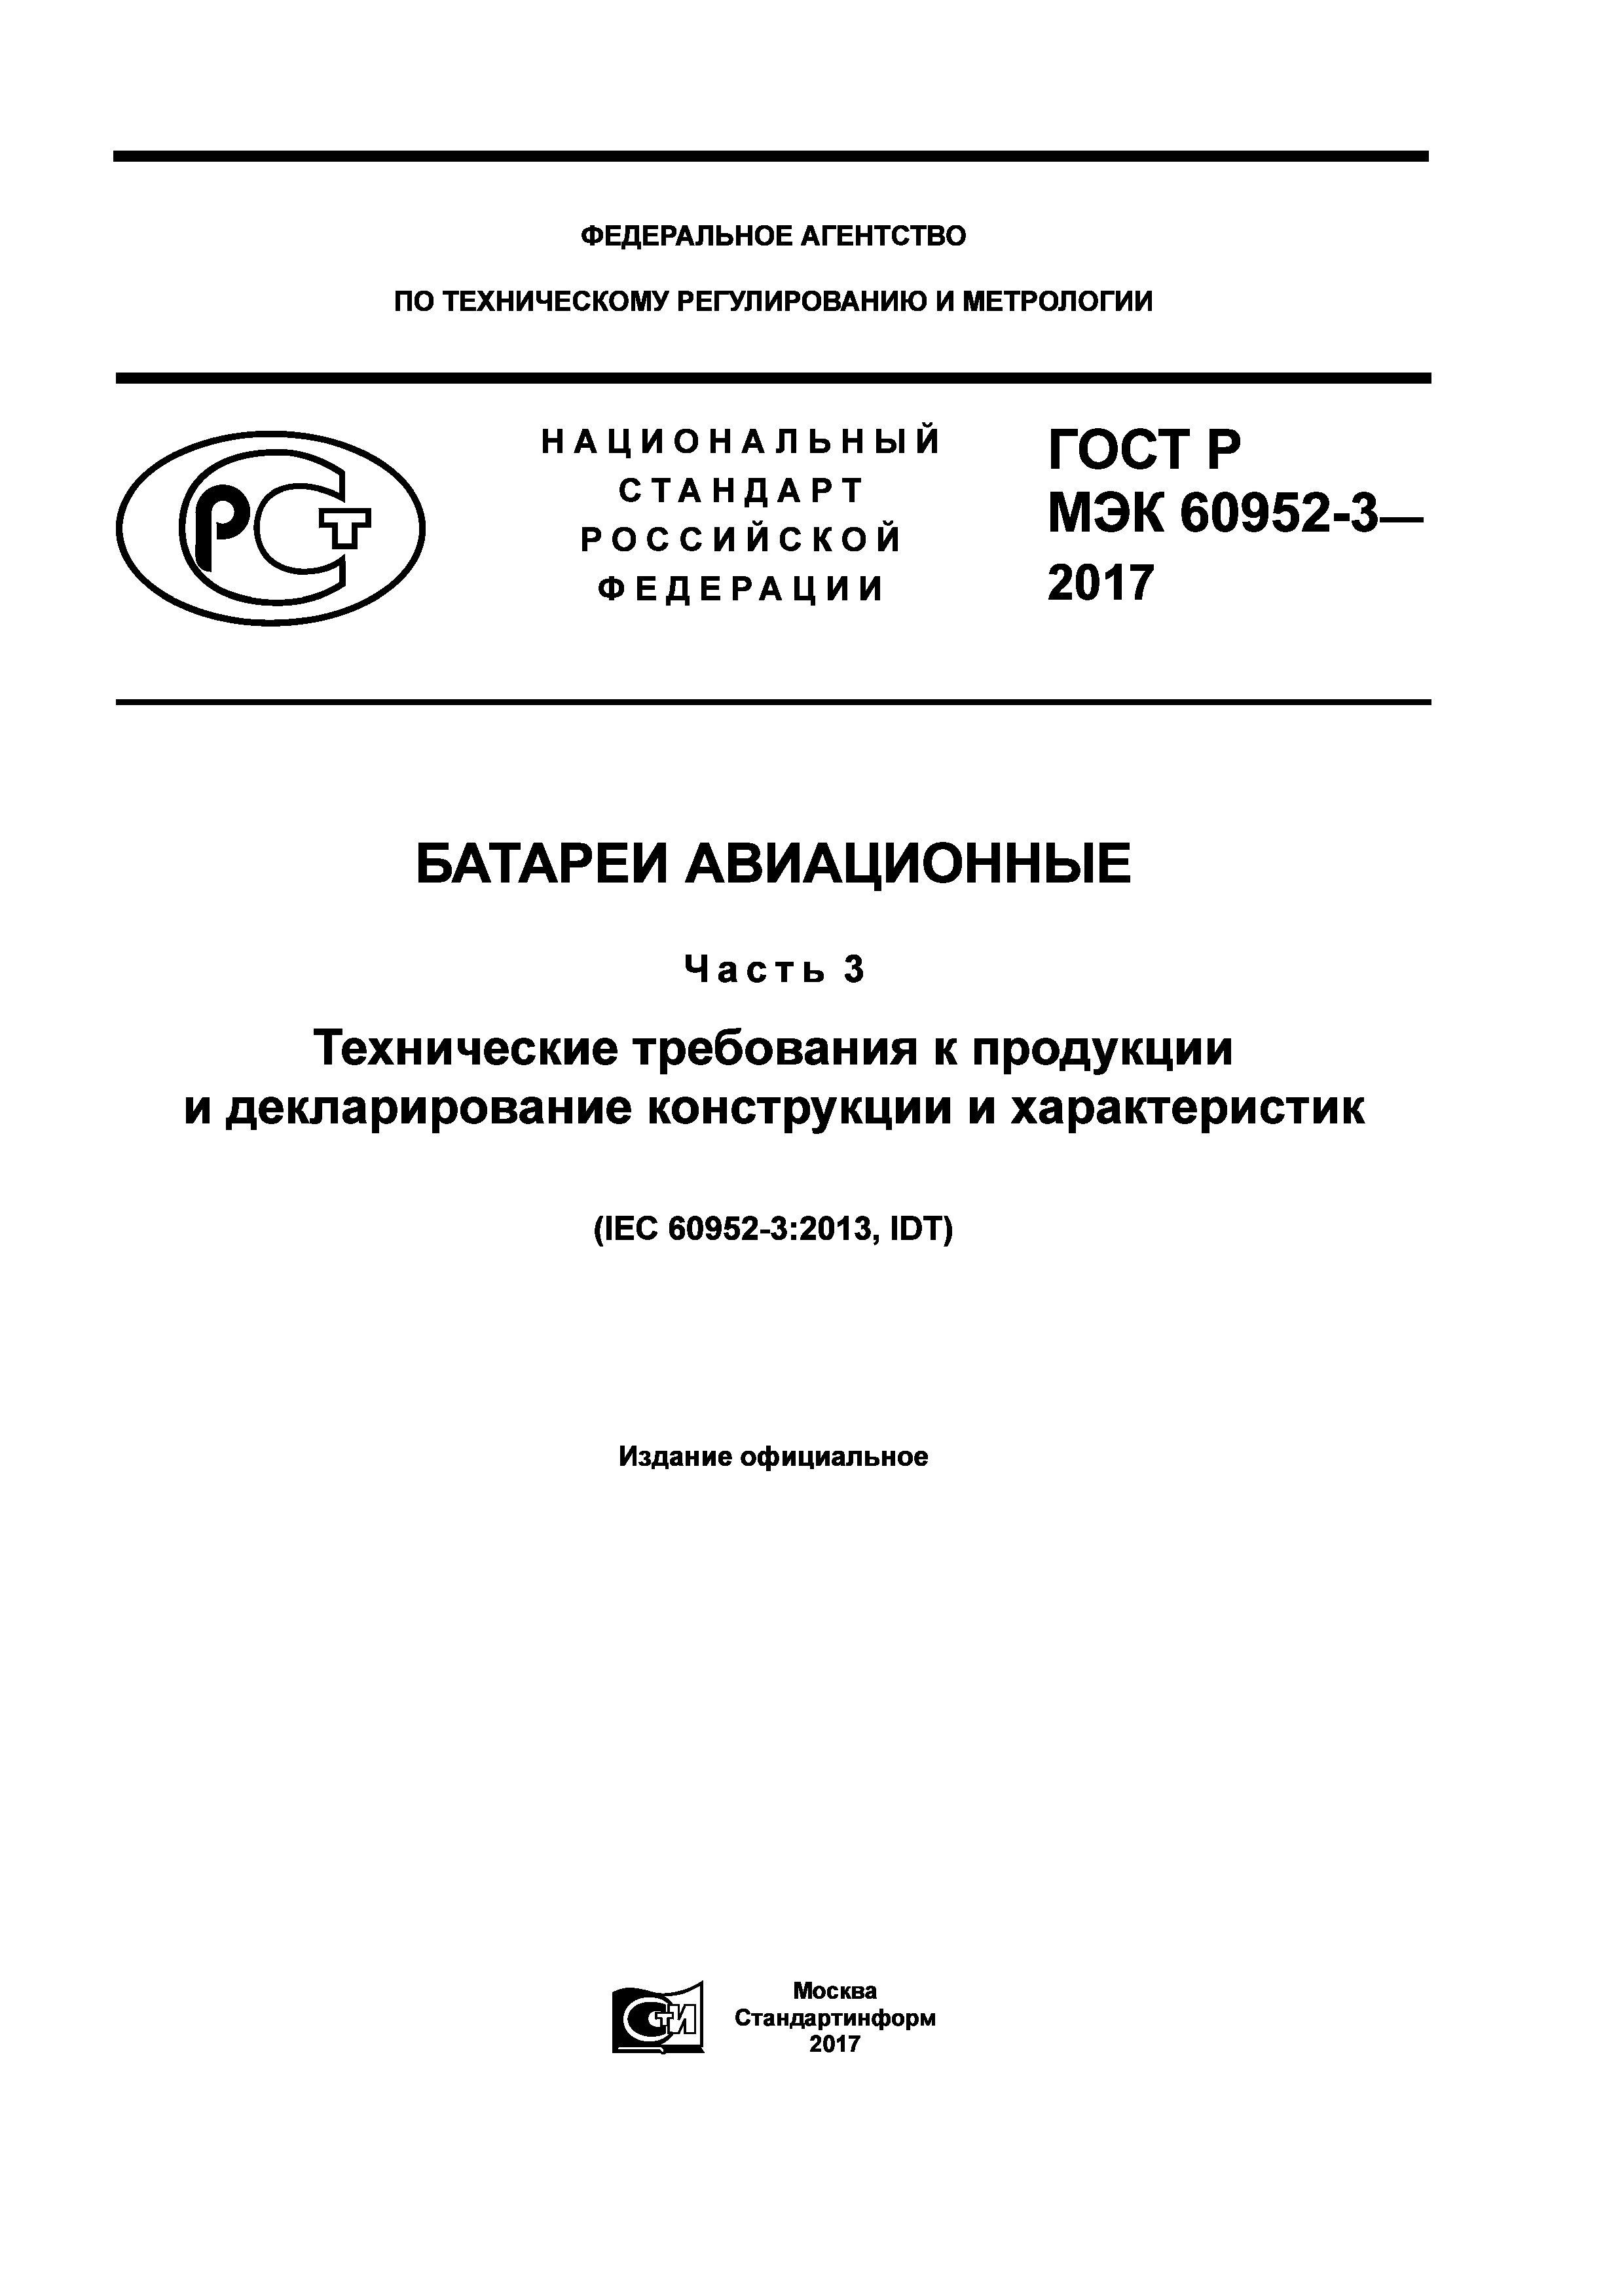 ГОСТ Р МЭК 60952-3-2017